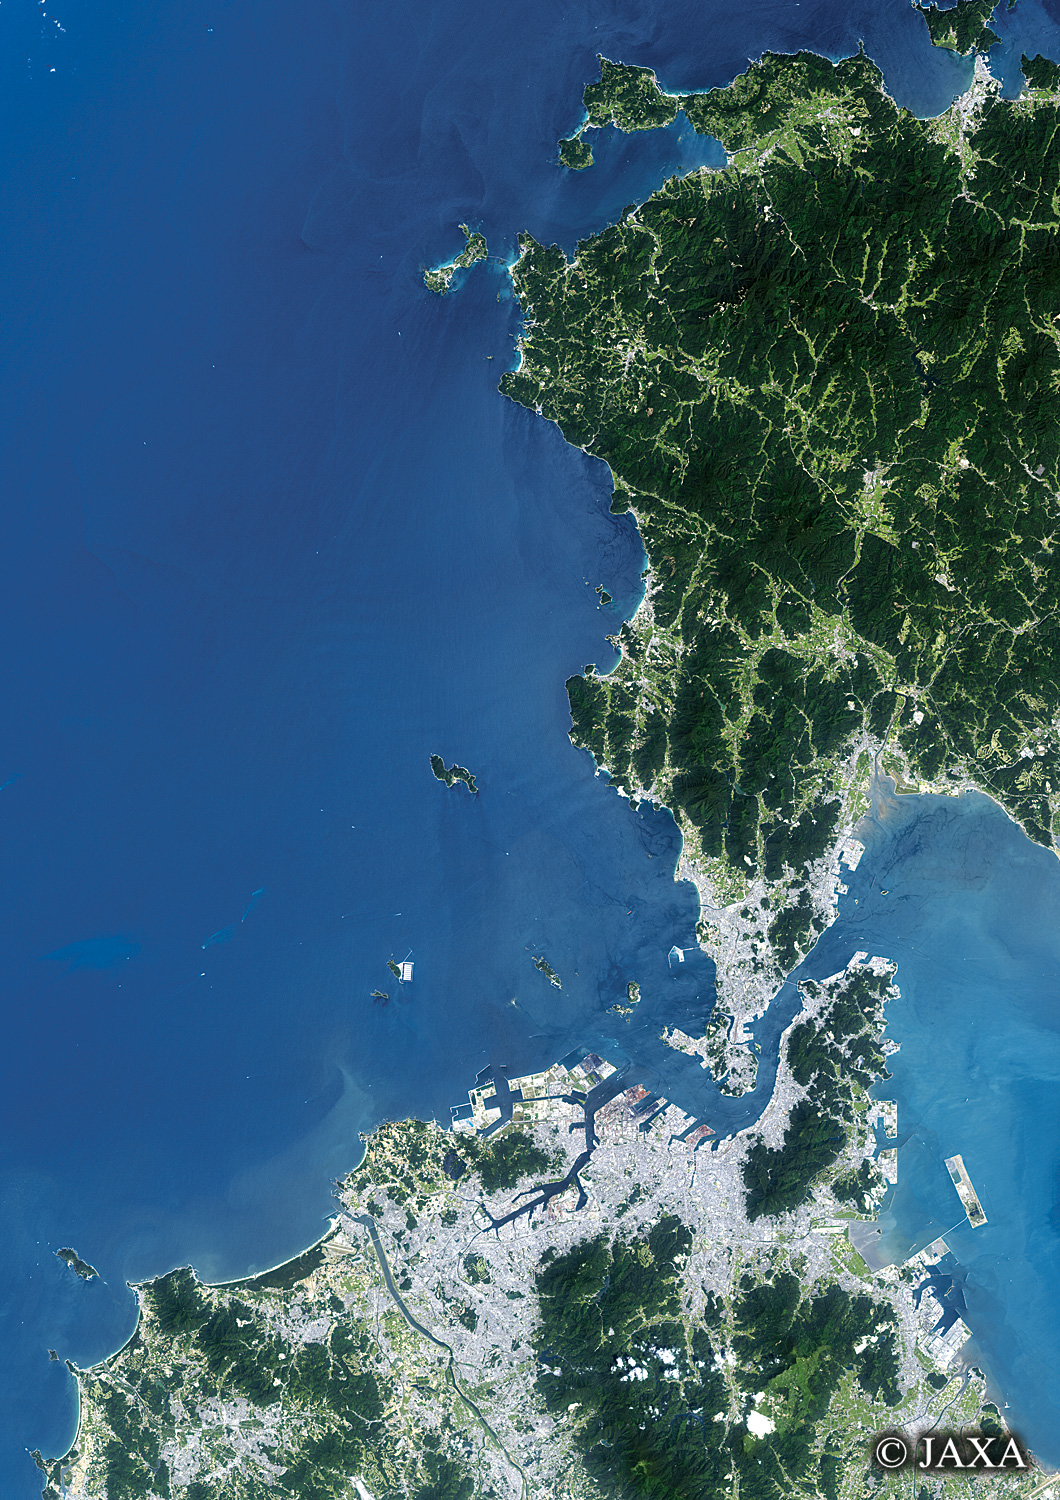 だいちから見た日本の都市 福岡県:衛星画像